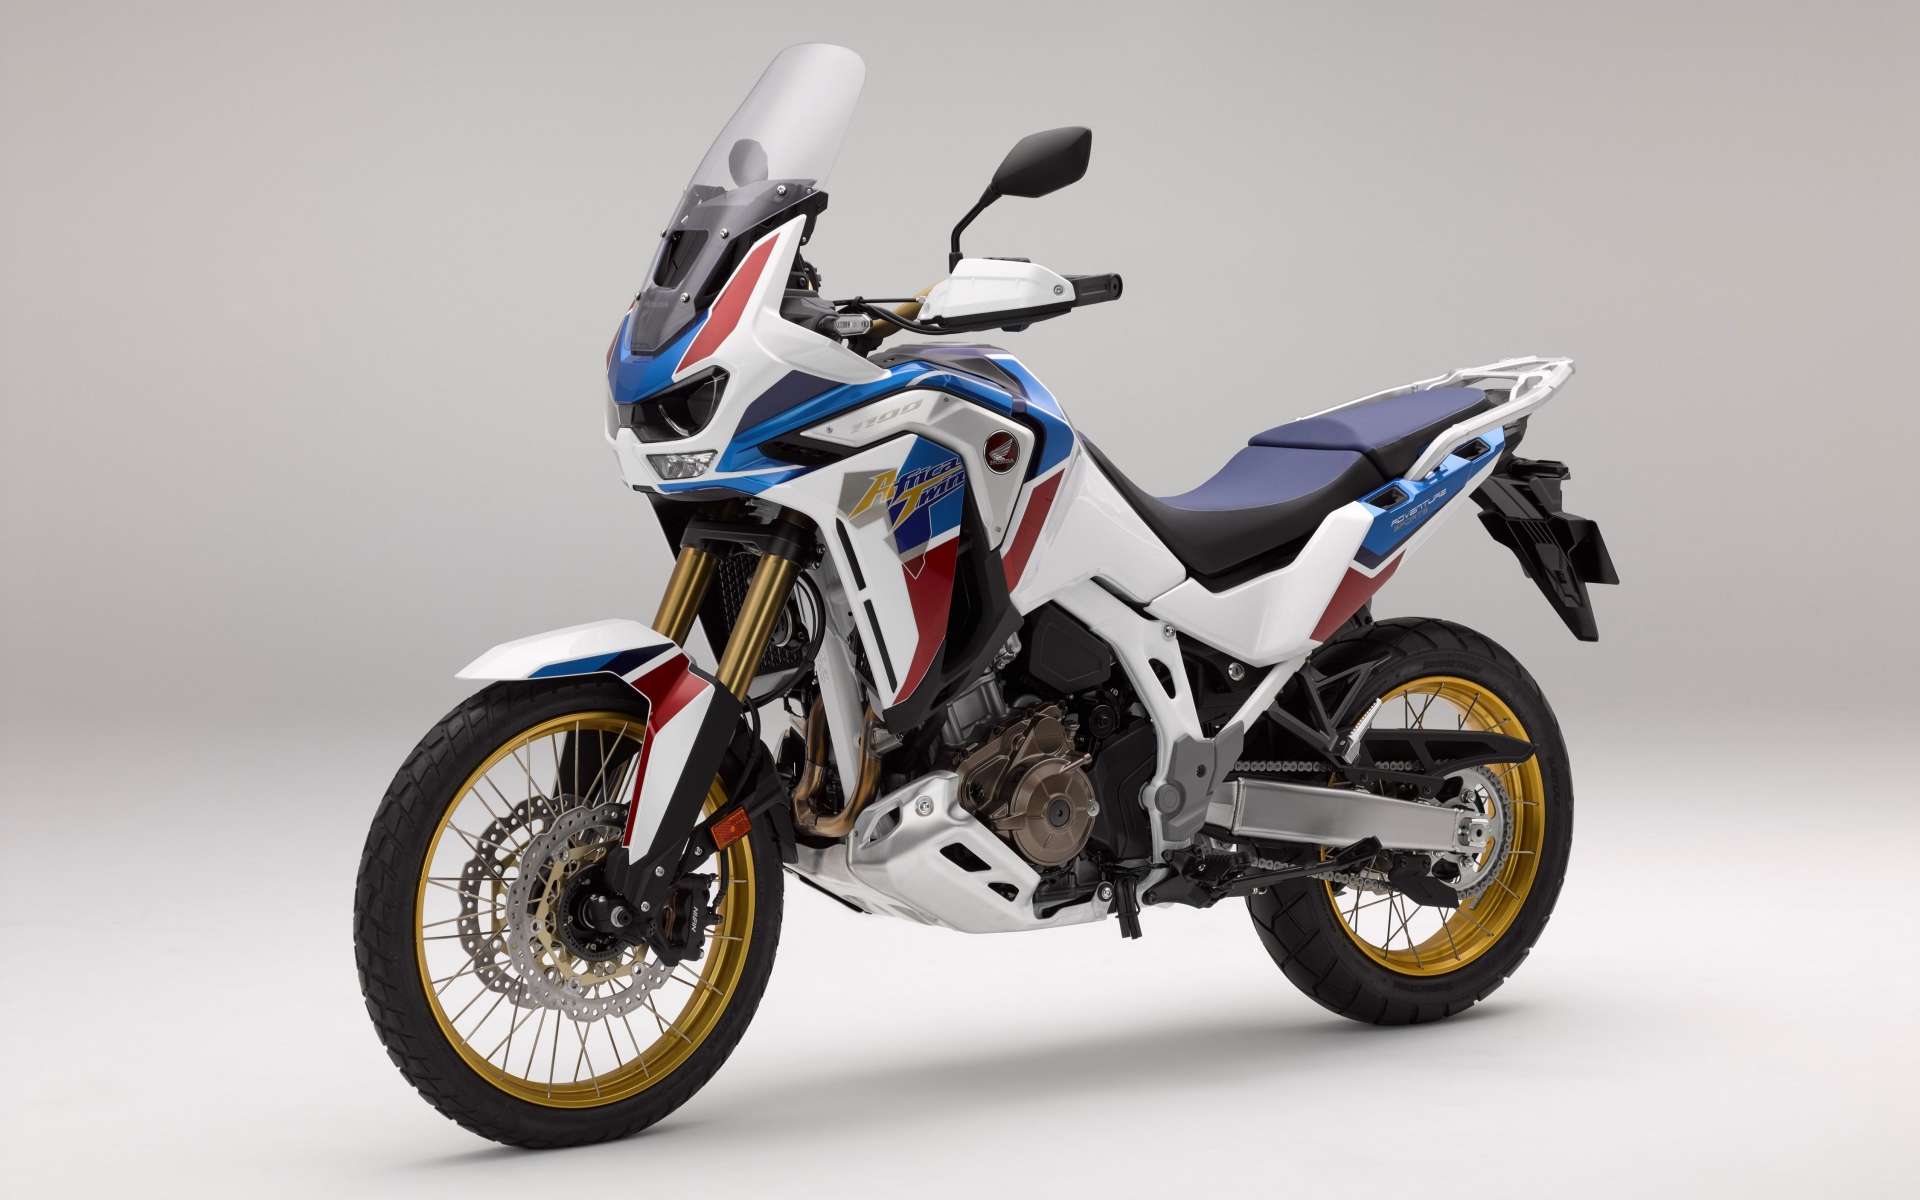 Спортивный мотоцикл Honda  CRF 1000 D, 2020  года на сером фоне